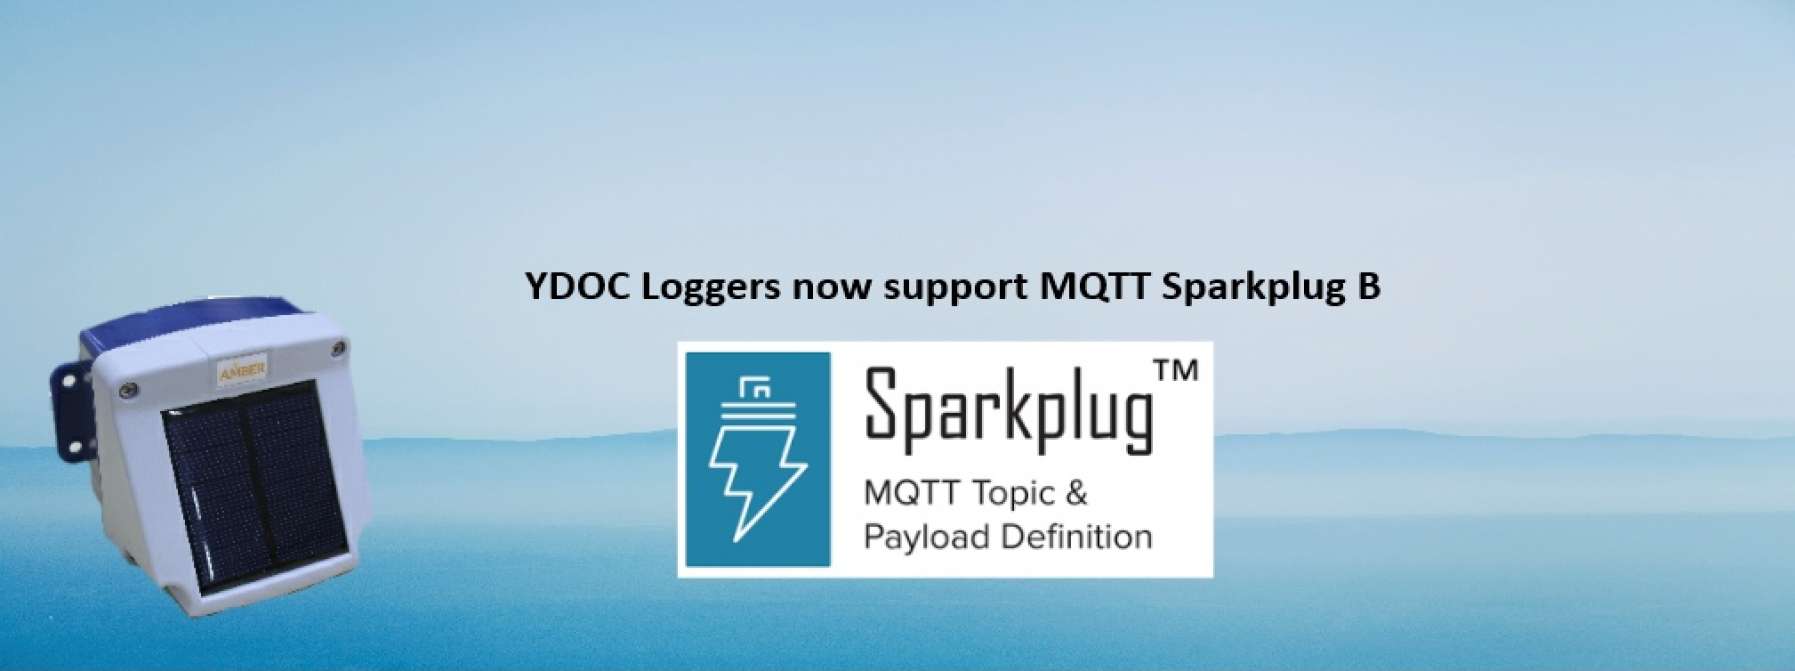 MQTT Sparkplug B